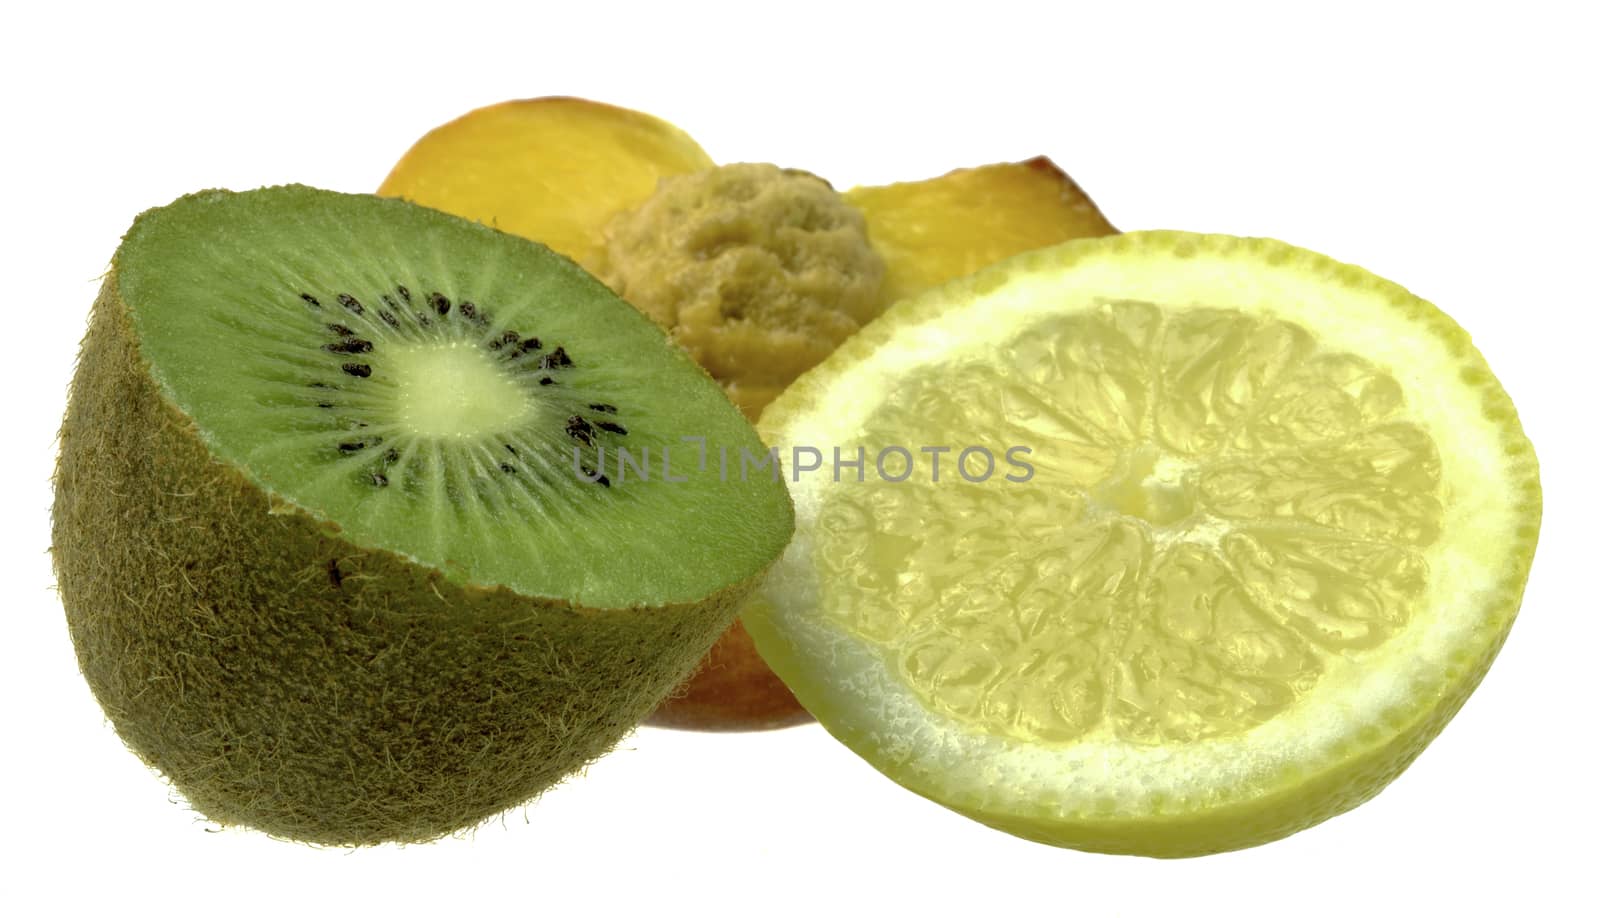 Peach, Kiwi and Lemon isolated on white background